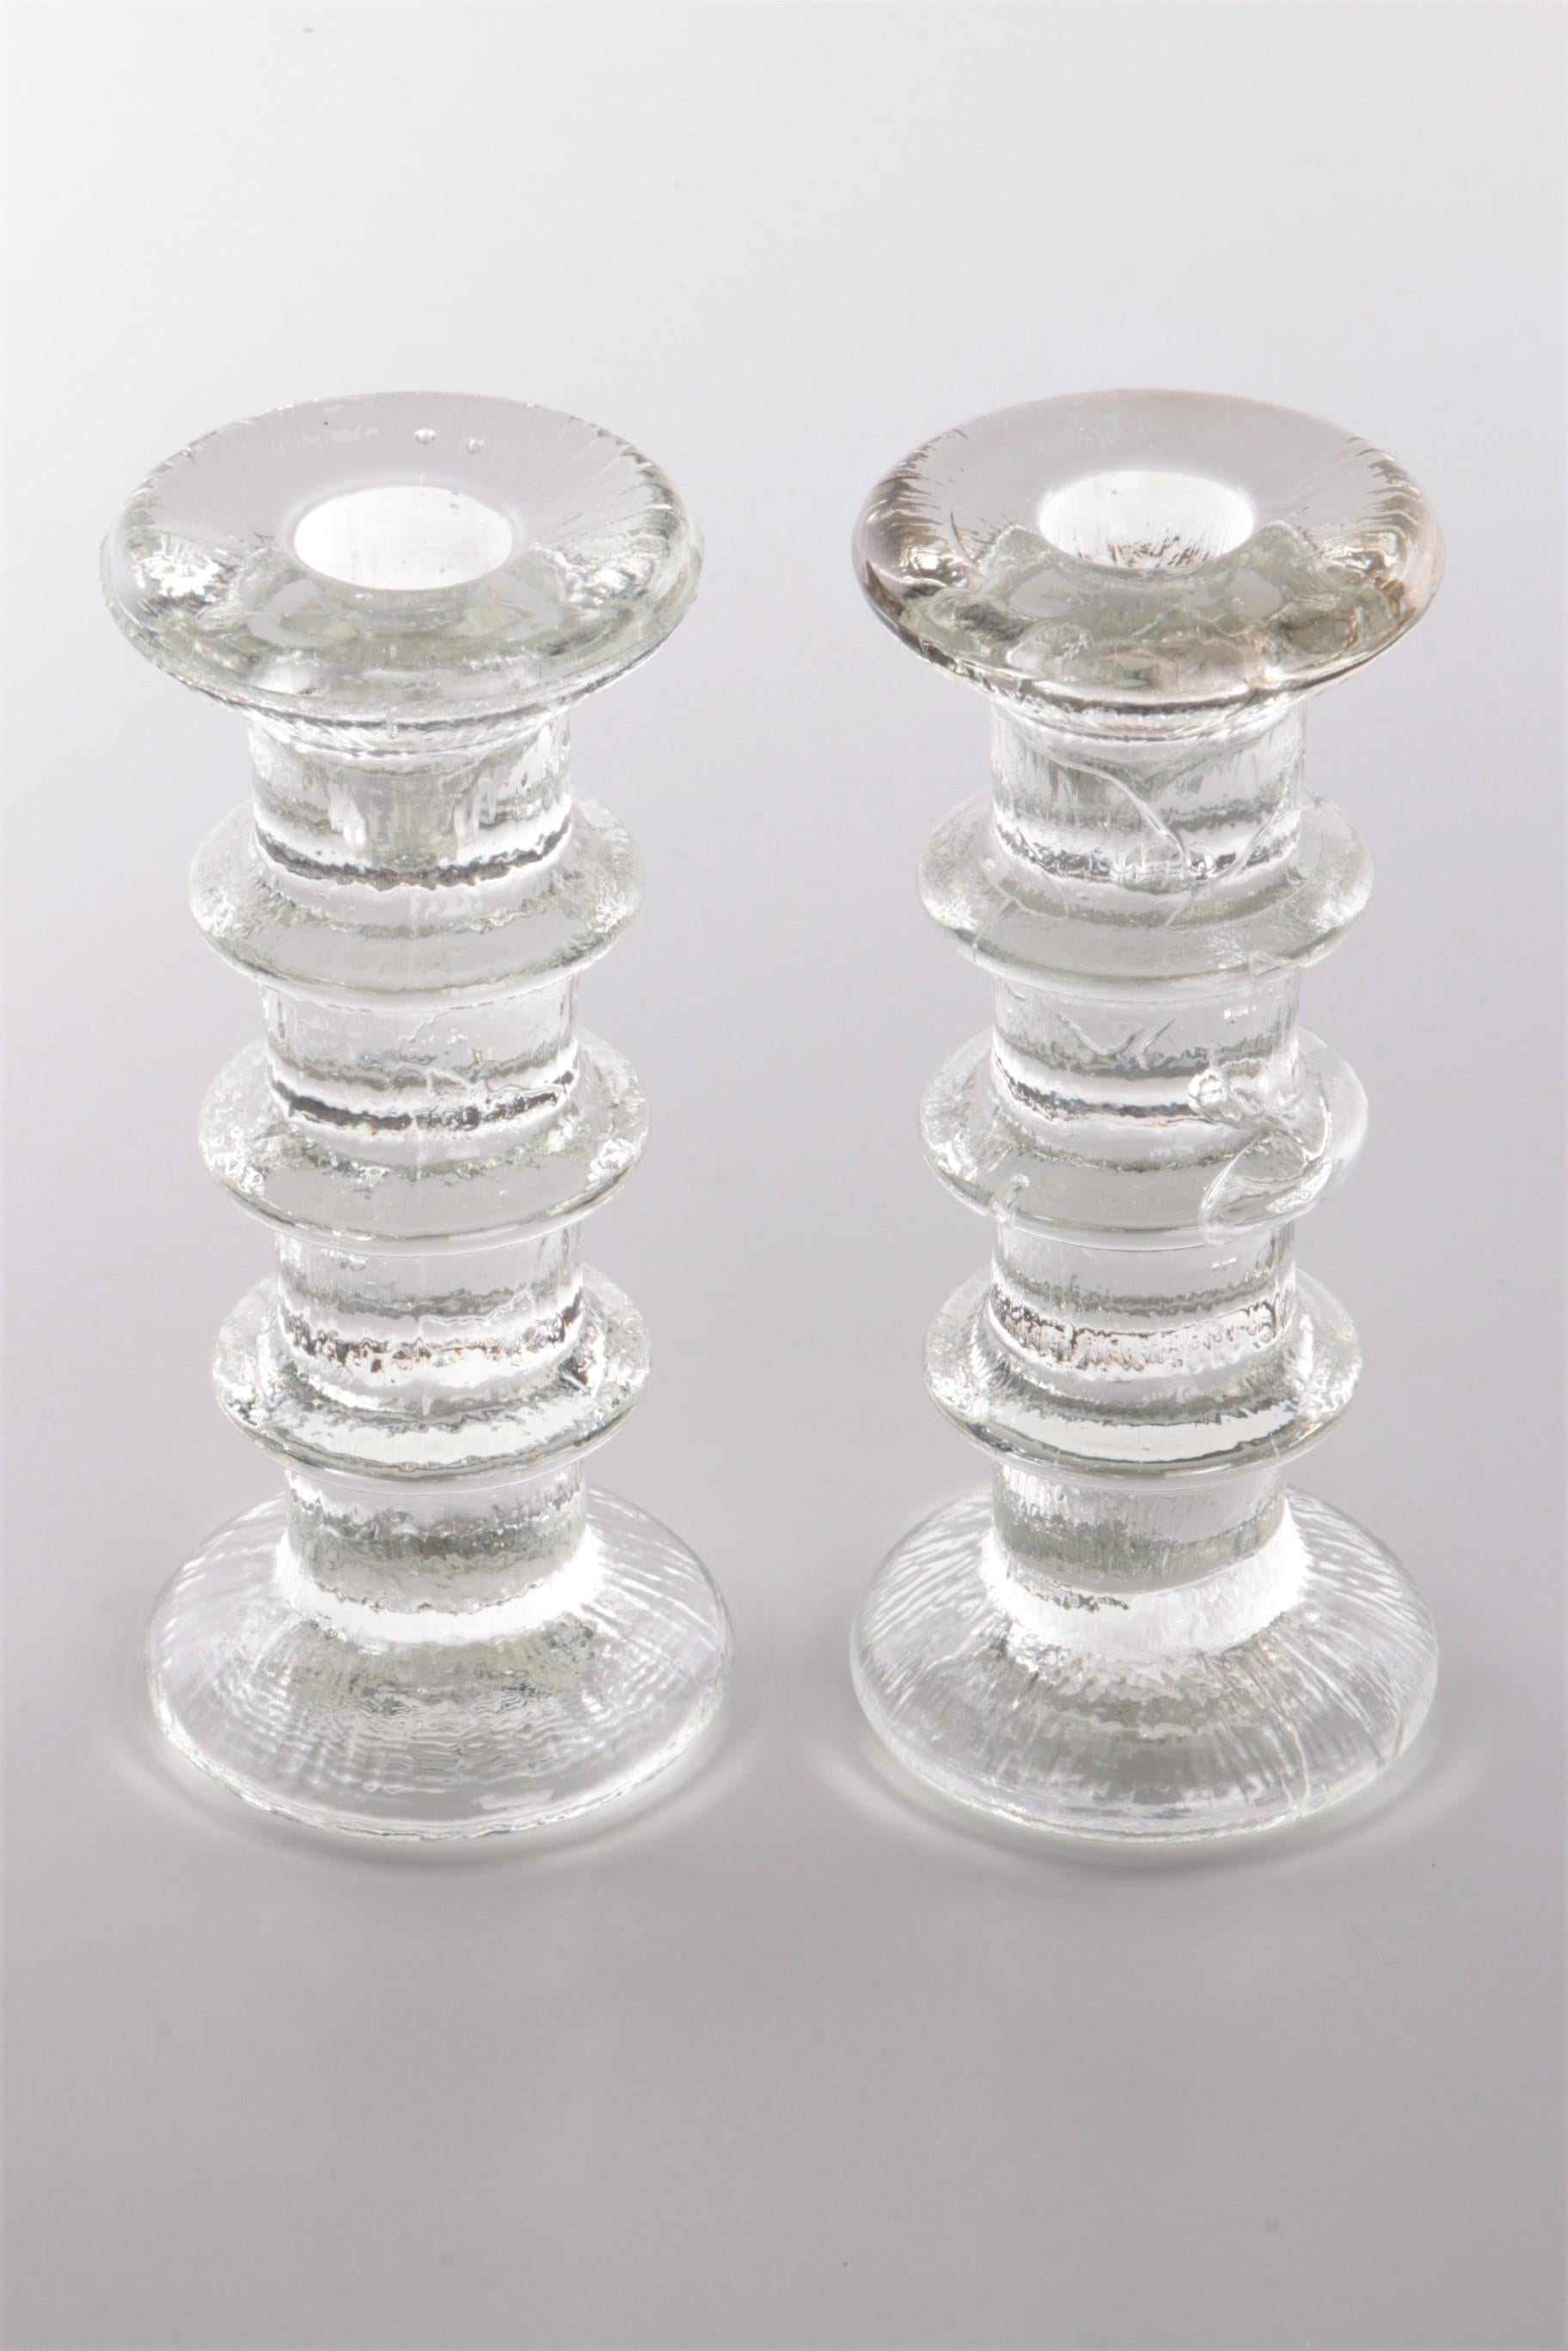 Vintage set of 2 glass candlesks Design by Staffan Gellerstedt 1960s


Un magnifique ensemble de 2 chandeliers en verre de Scandinavie : chandelier/bougies avec plusieurs anneaux design par Staffan Gellerstedt fait par Pukeberg 1966.

Ce grand